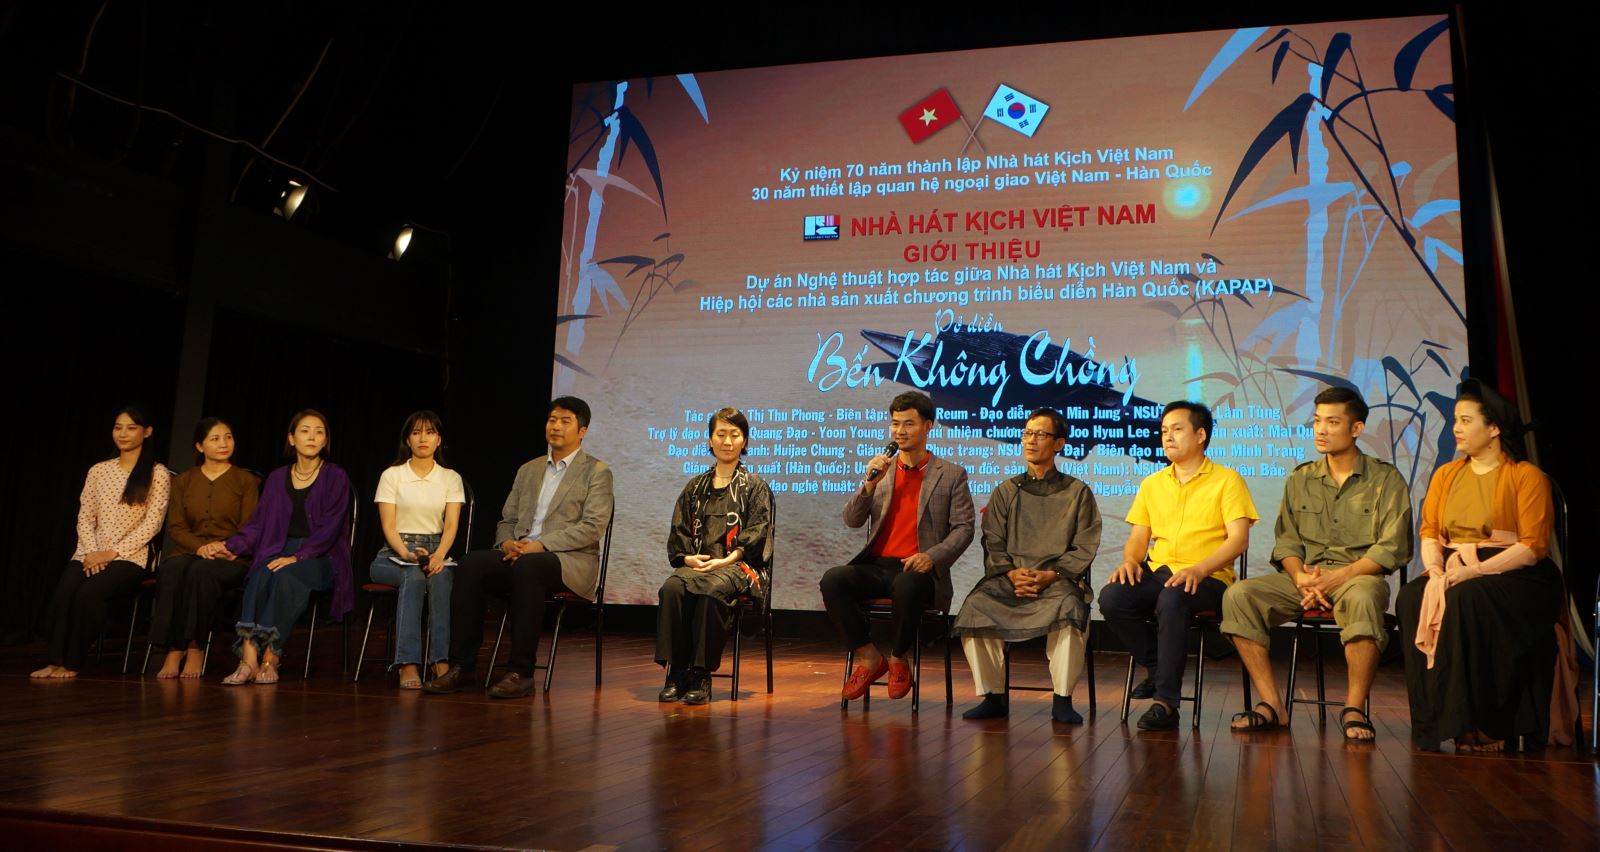 “Bến không chồng” - một phiên bản mới trong dự án nghệ thuật hợp tác giữa Nhà hát Kịch Việt Nam và KAPAP